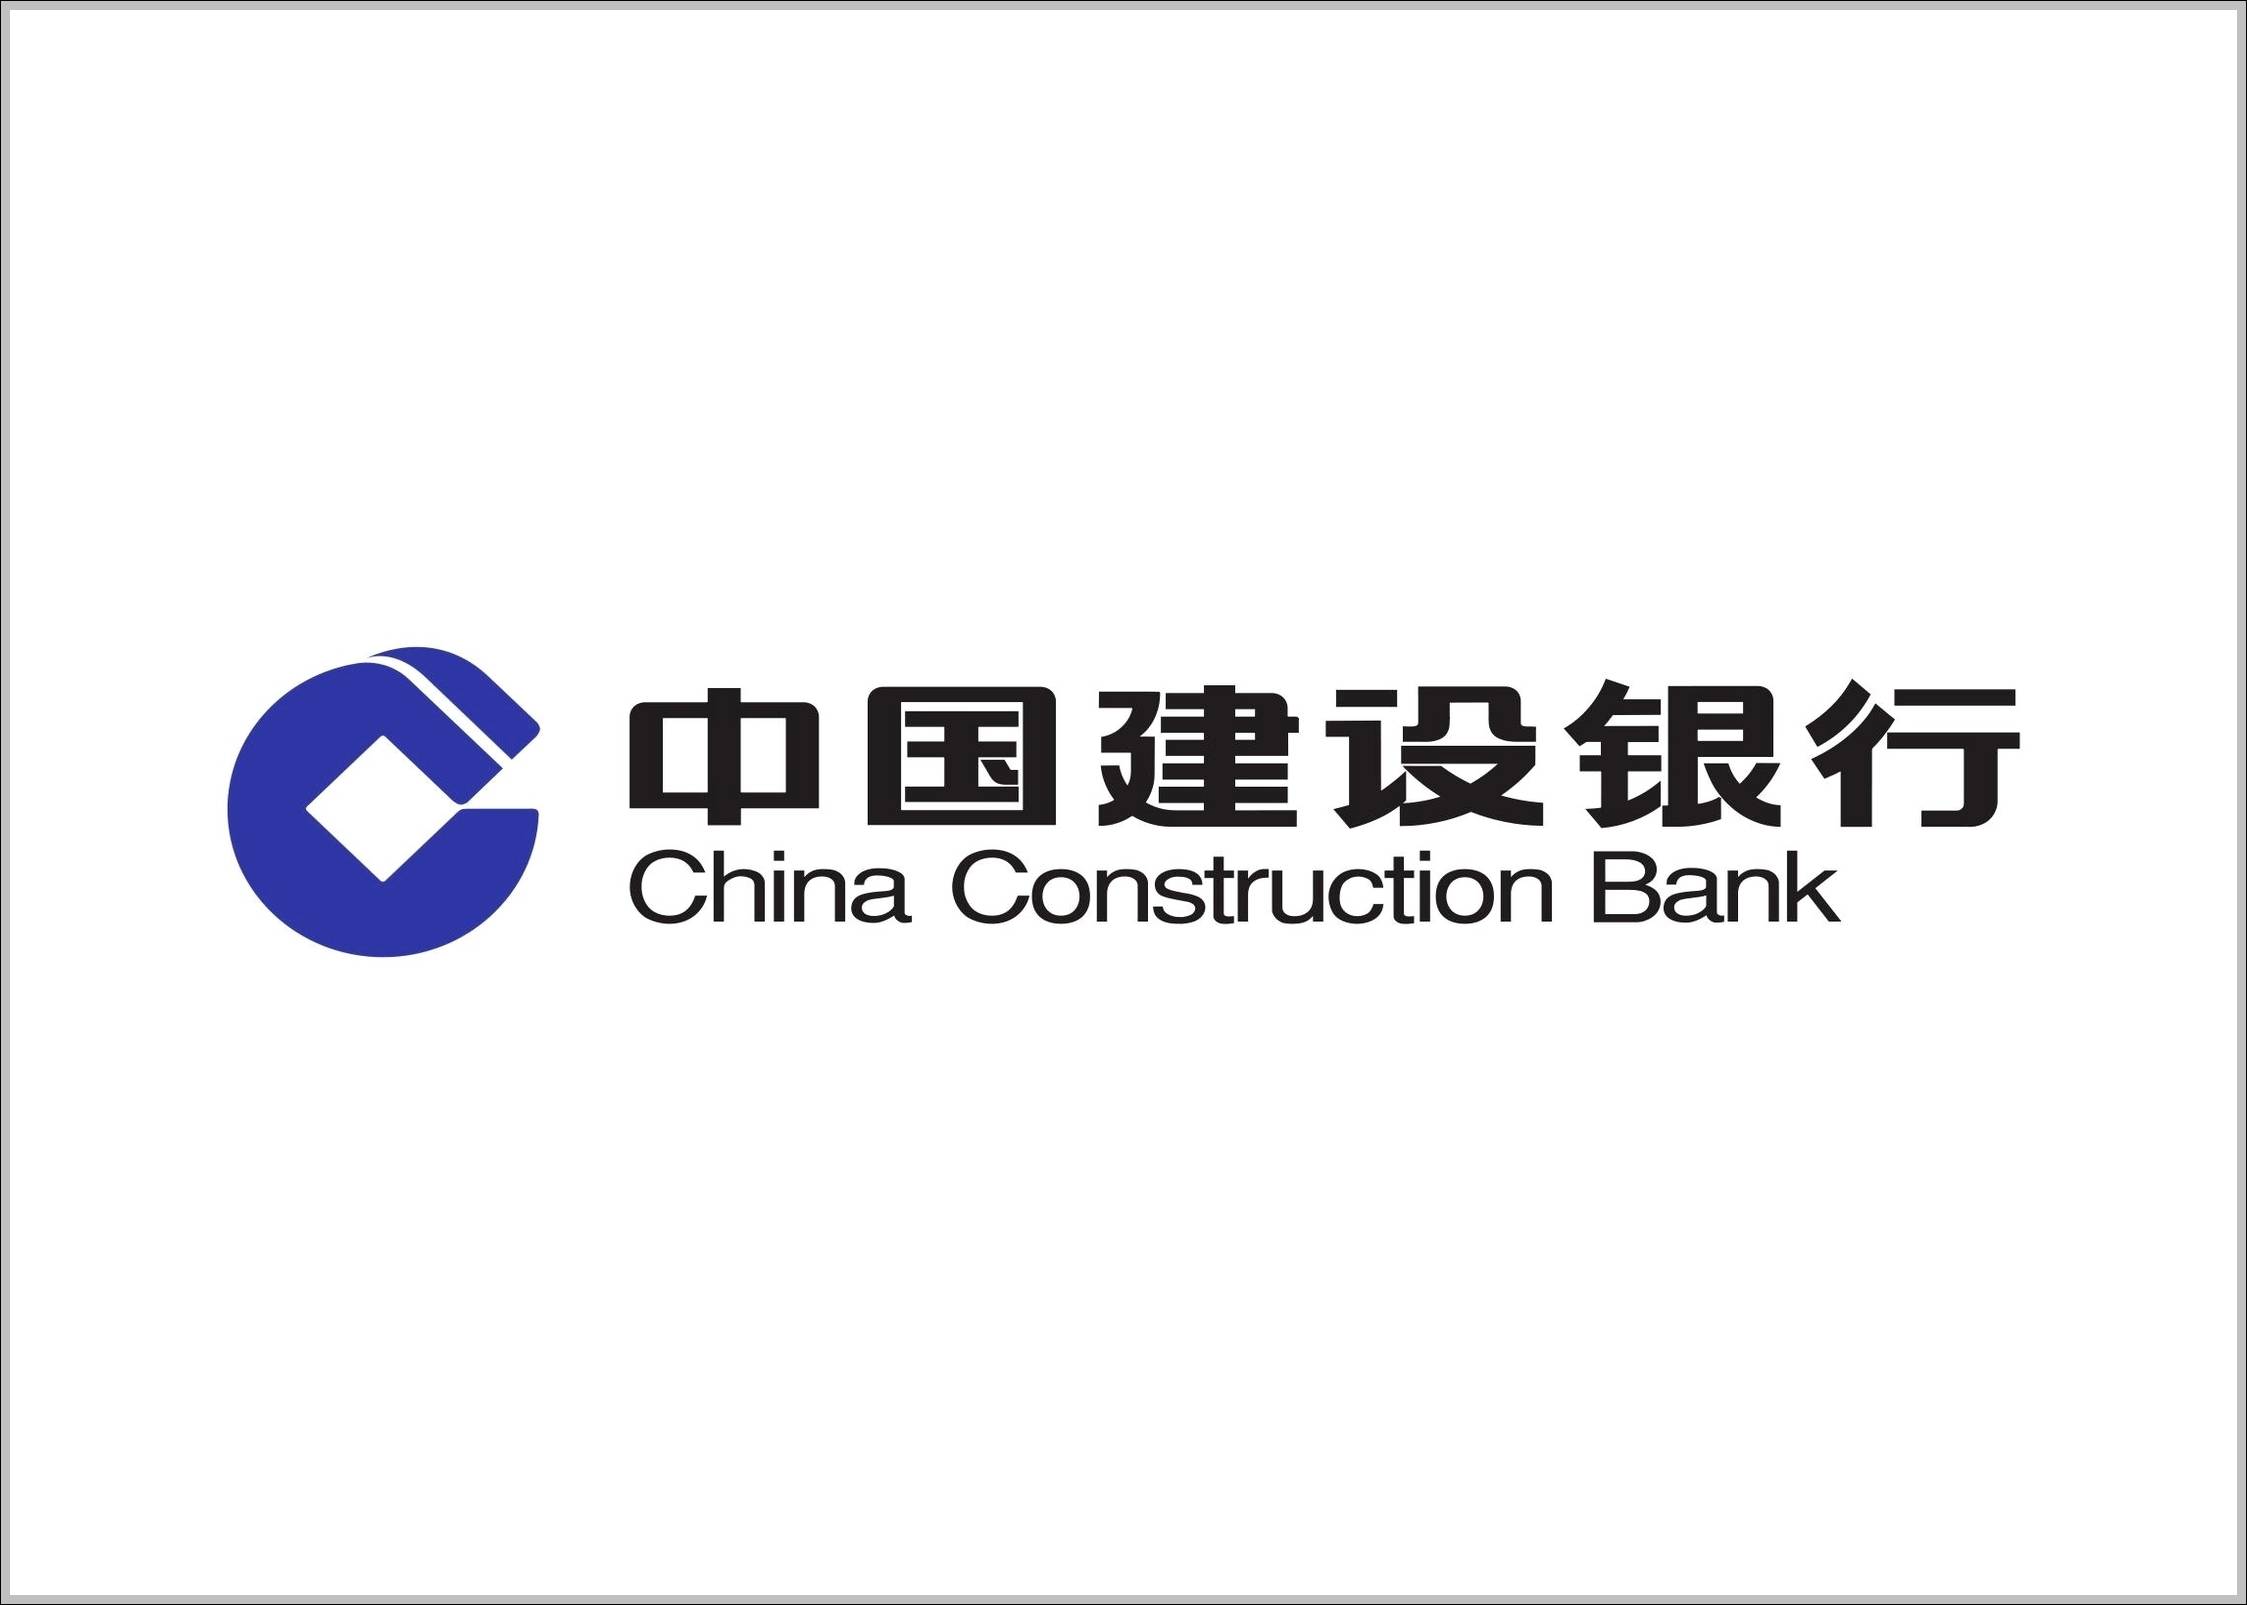 China Construction Bank sign